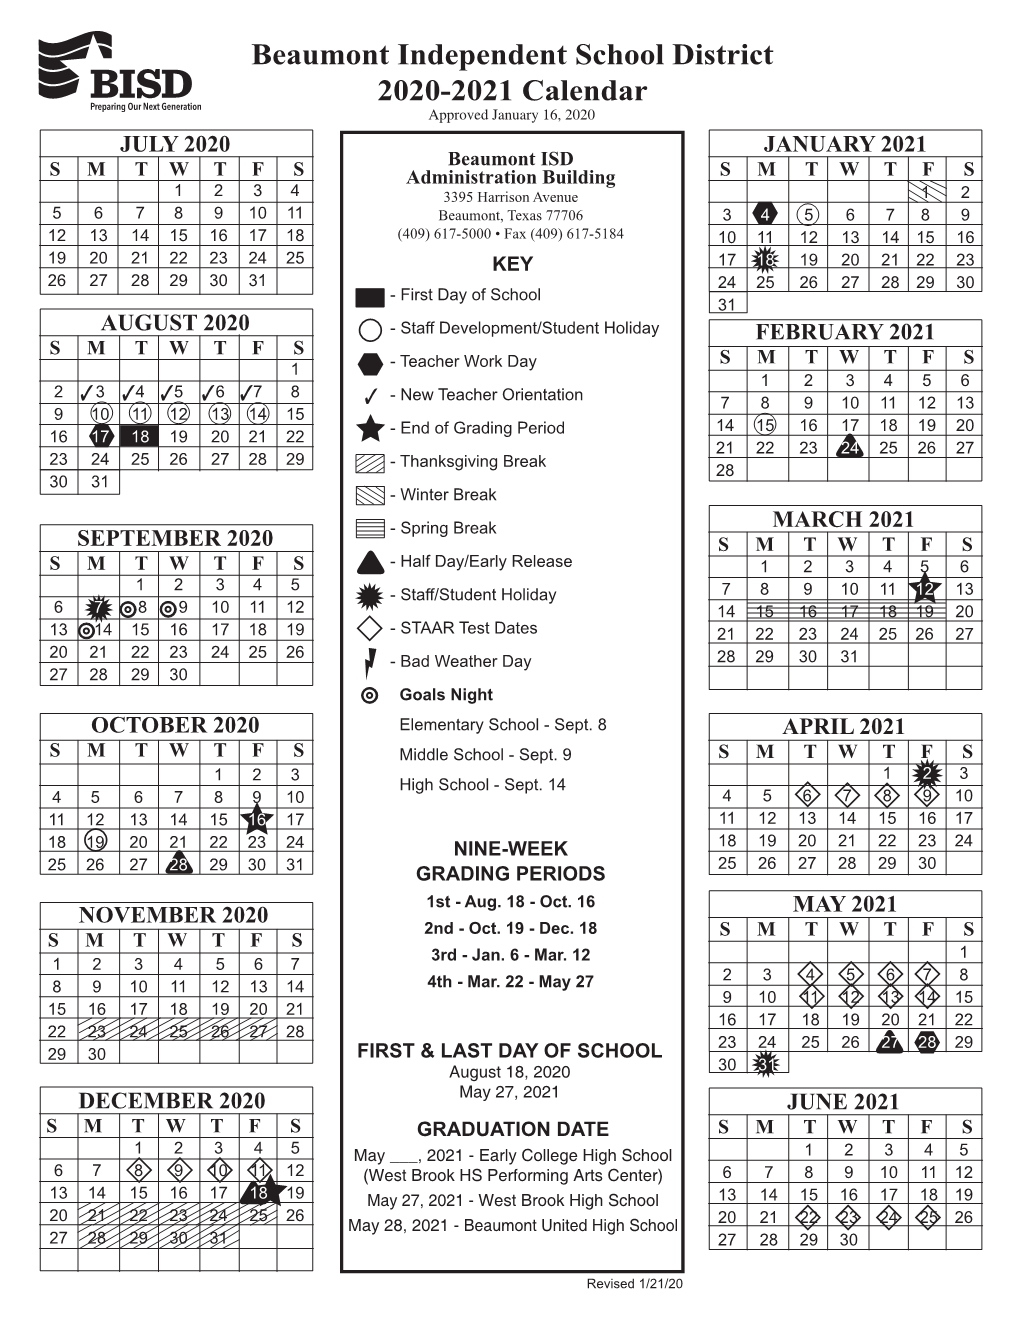 Beaumont Independent School District 2020-2021 Calendar